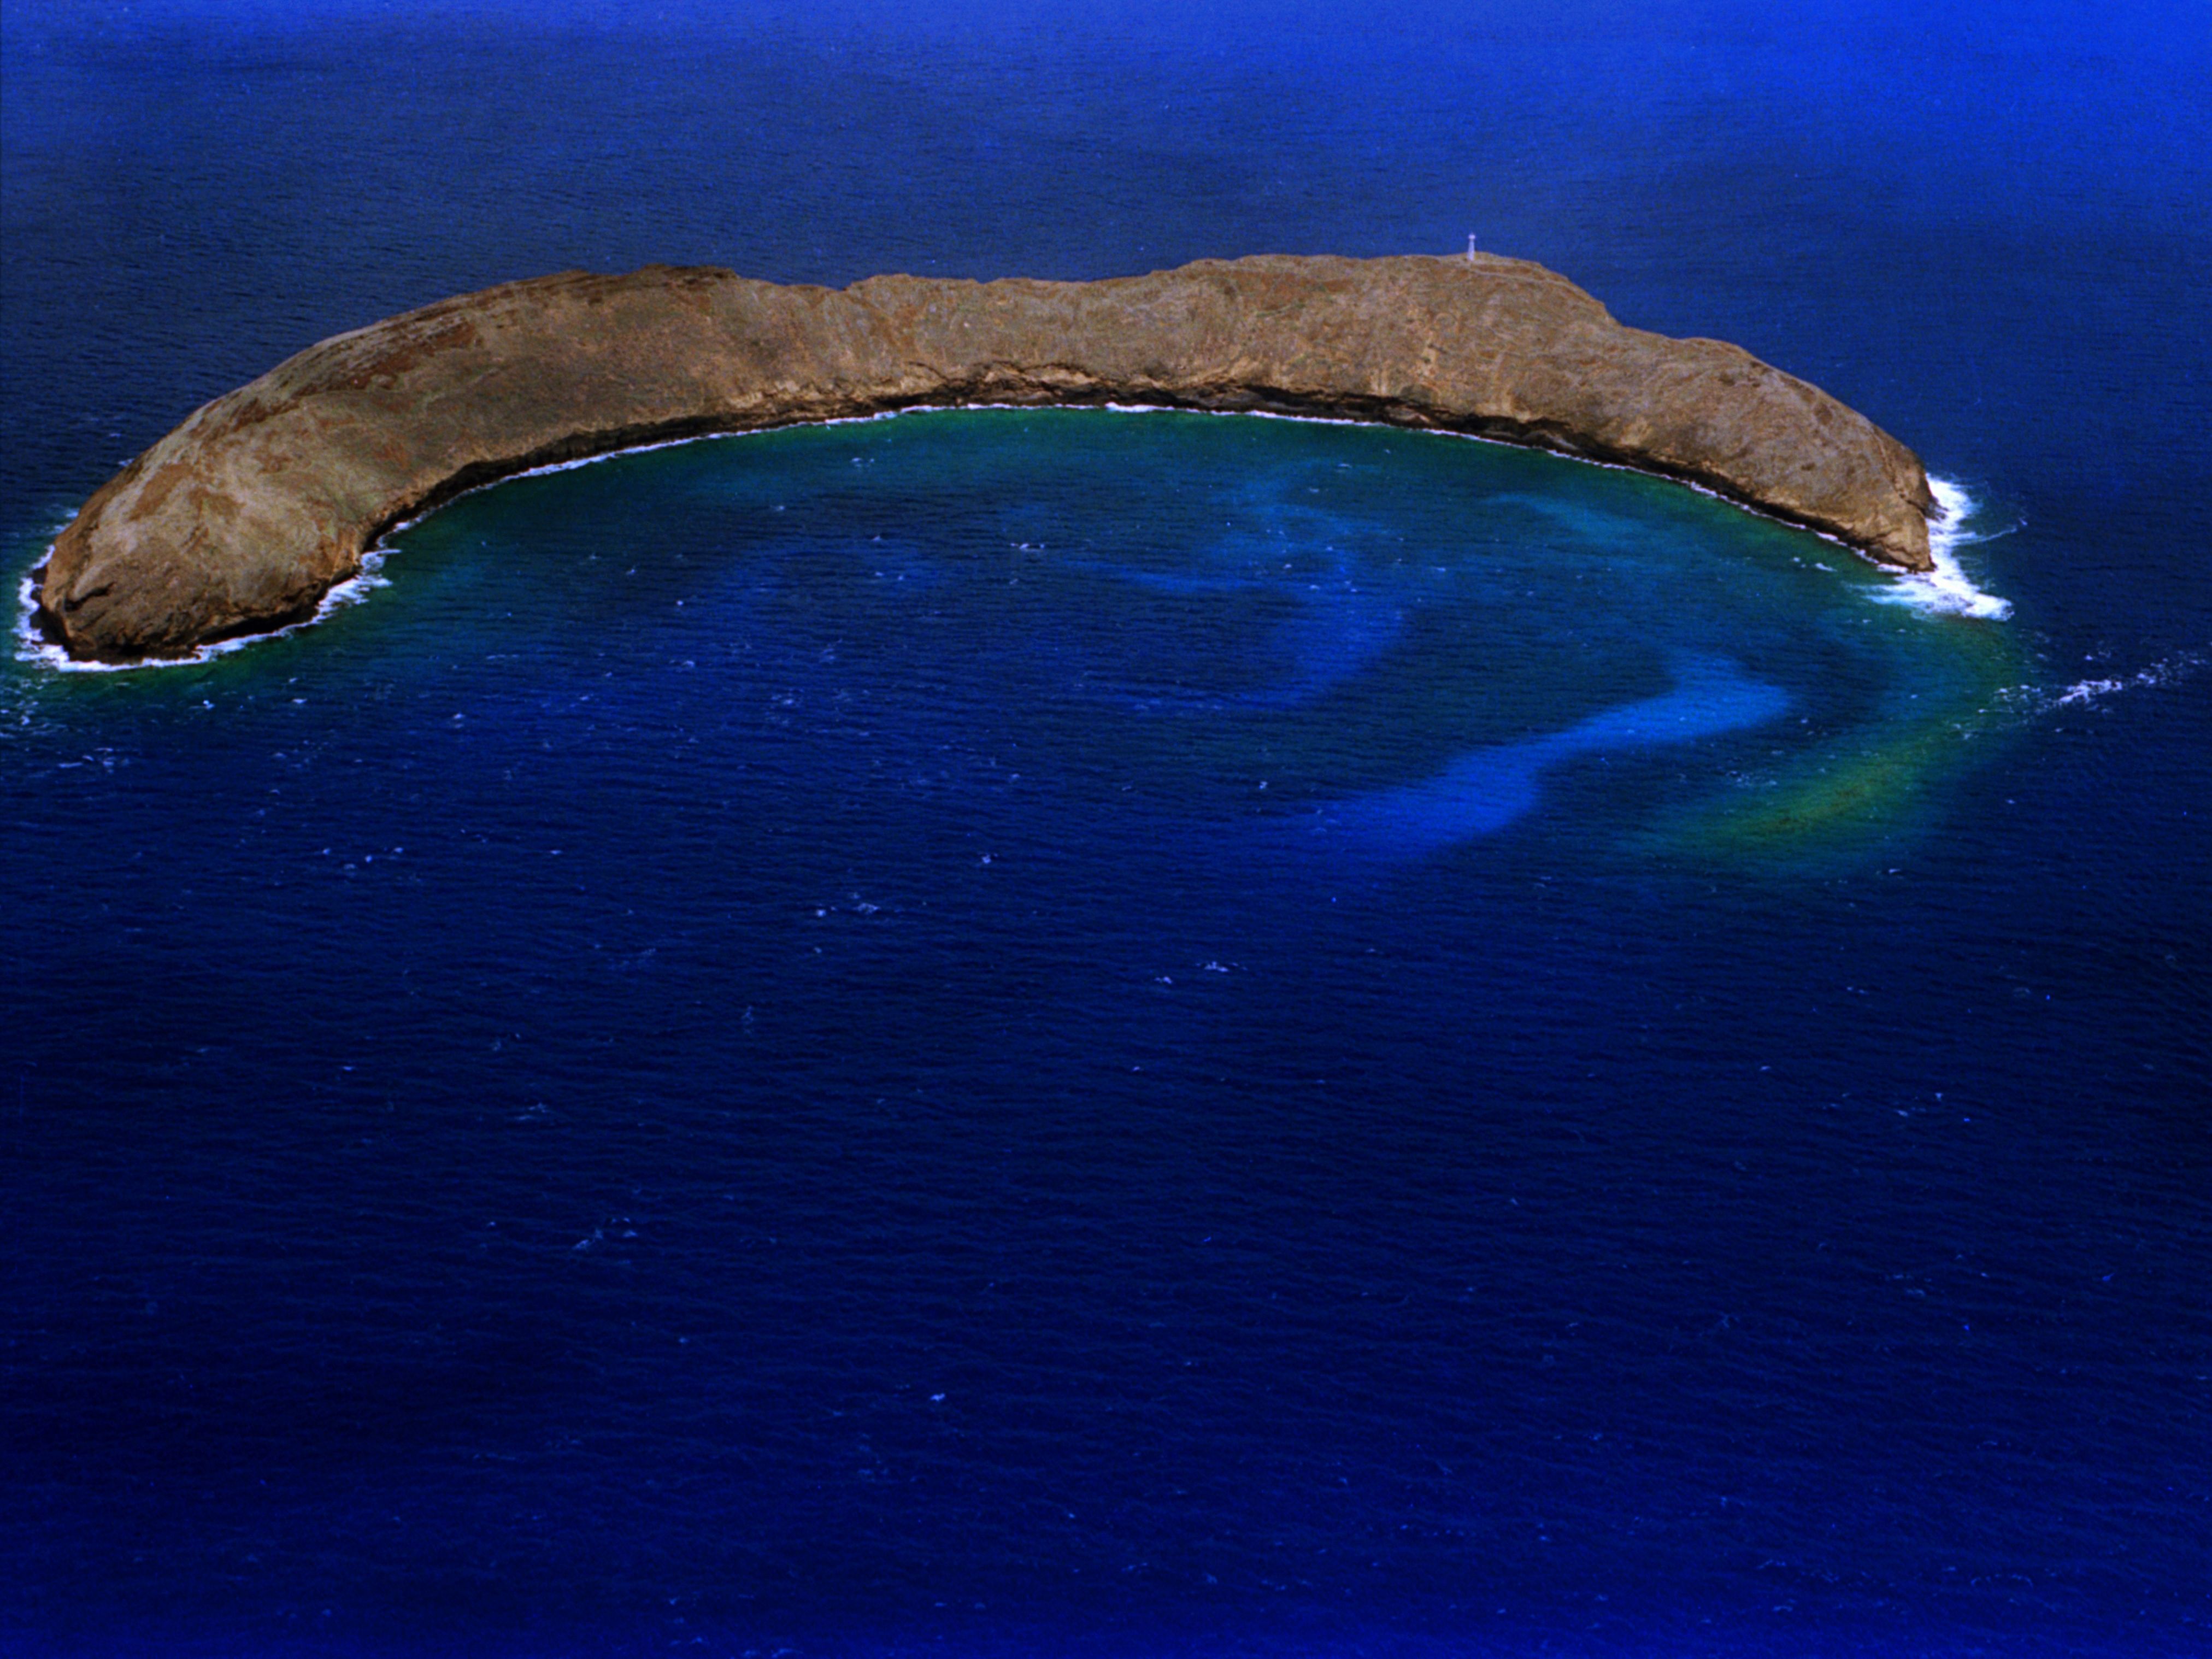 snorkeling molokini crater off the coast of Maui